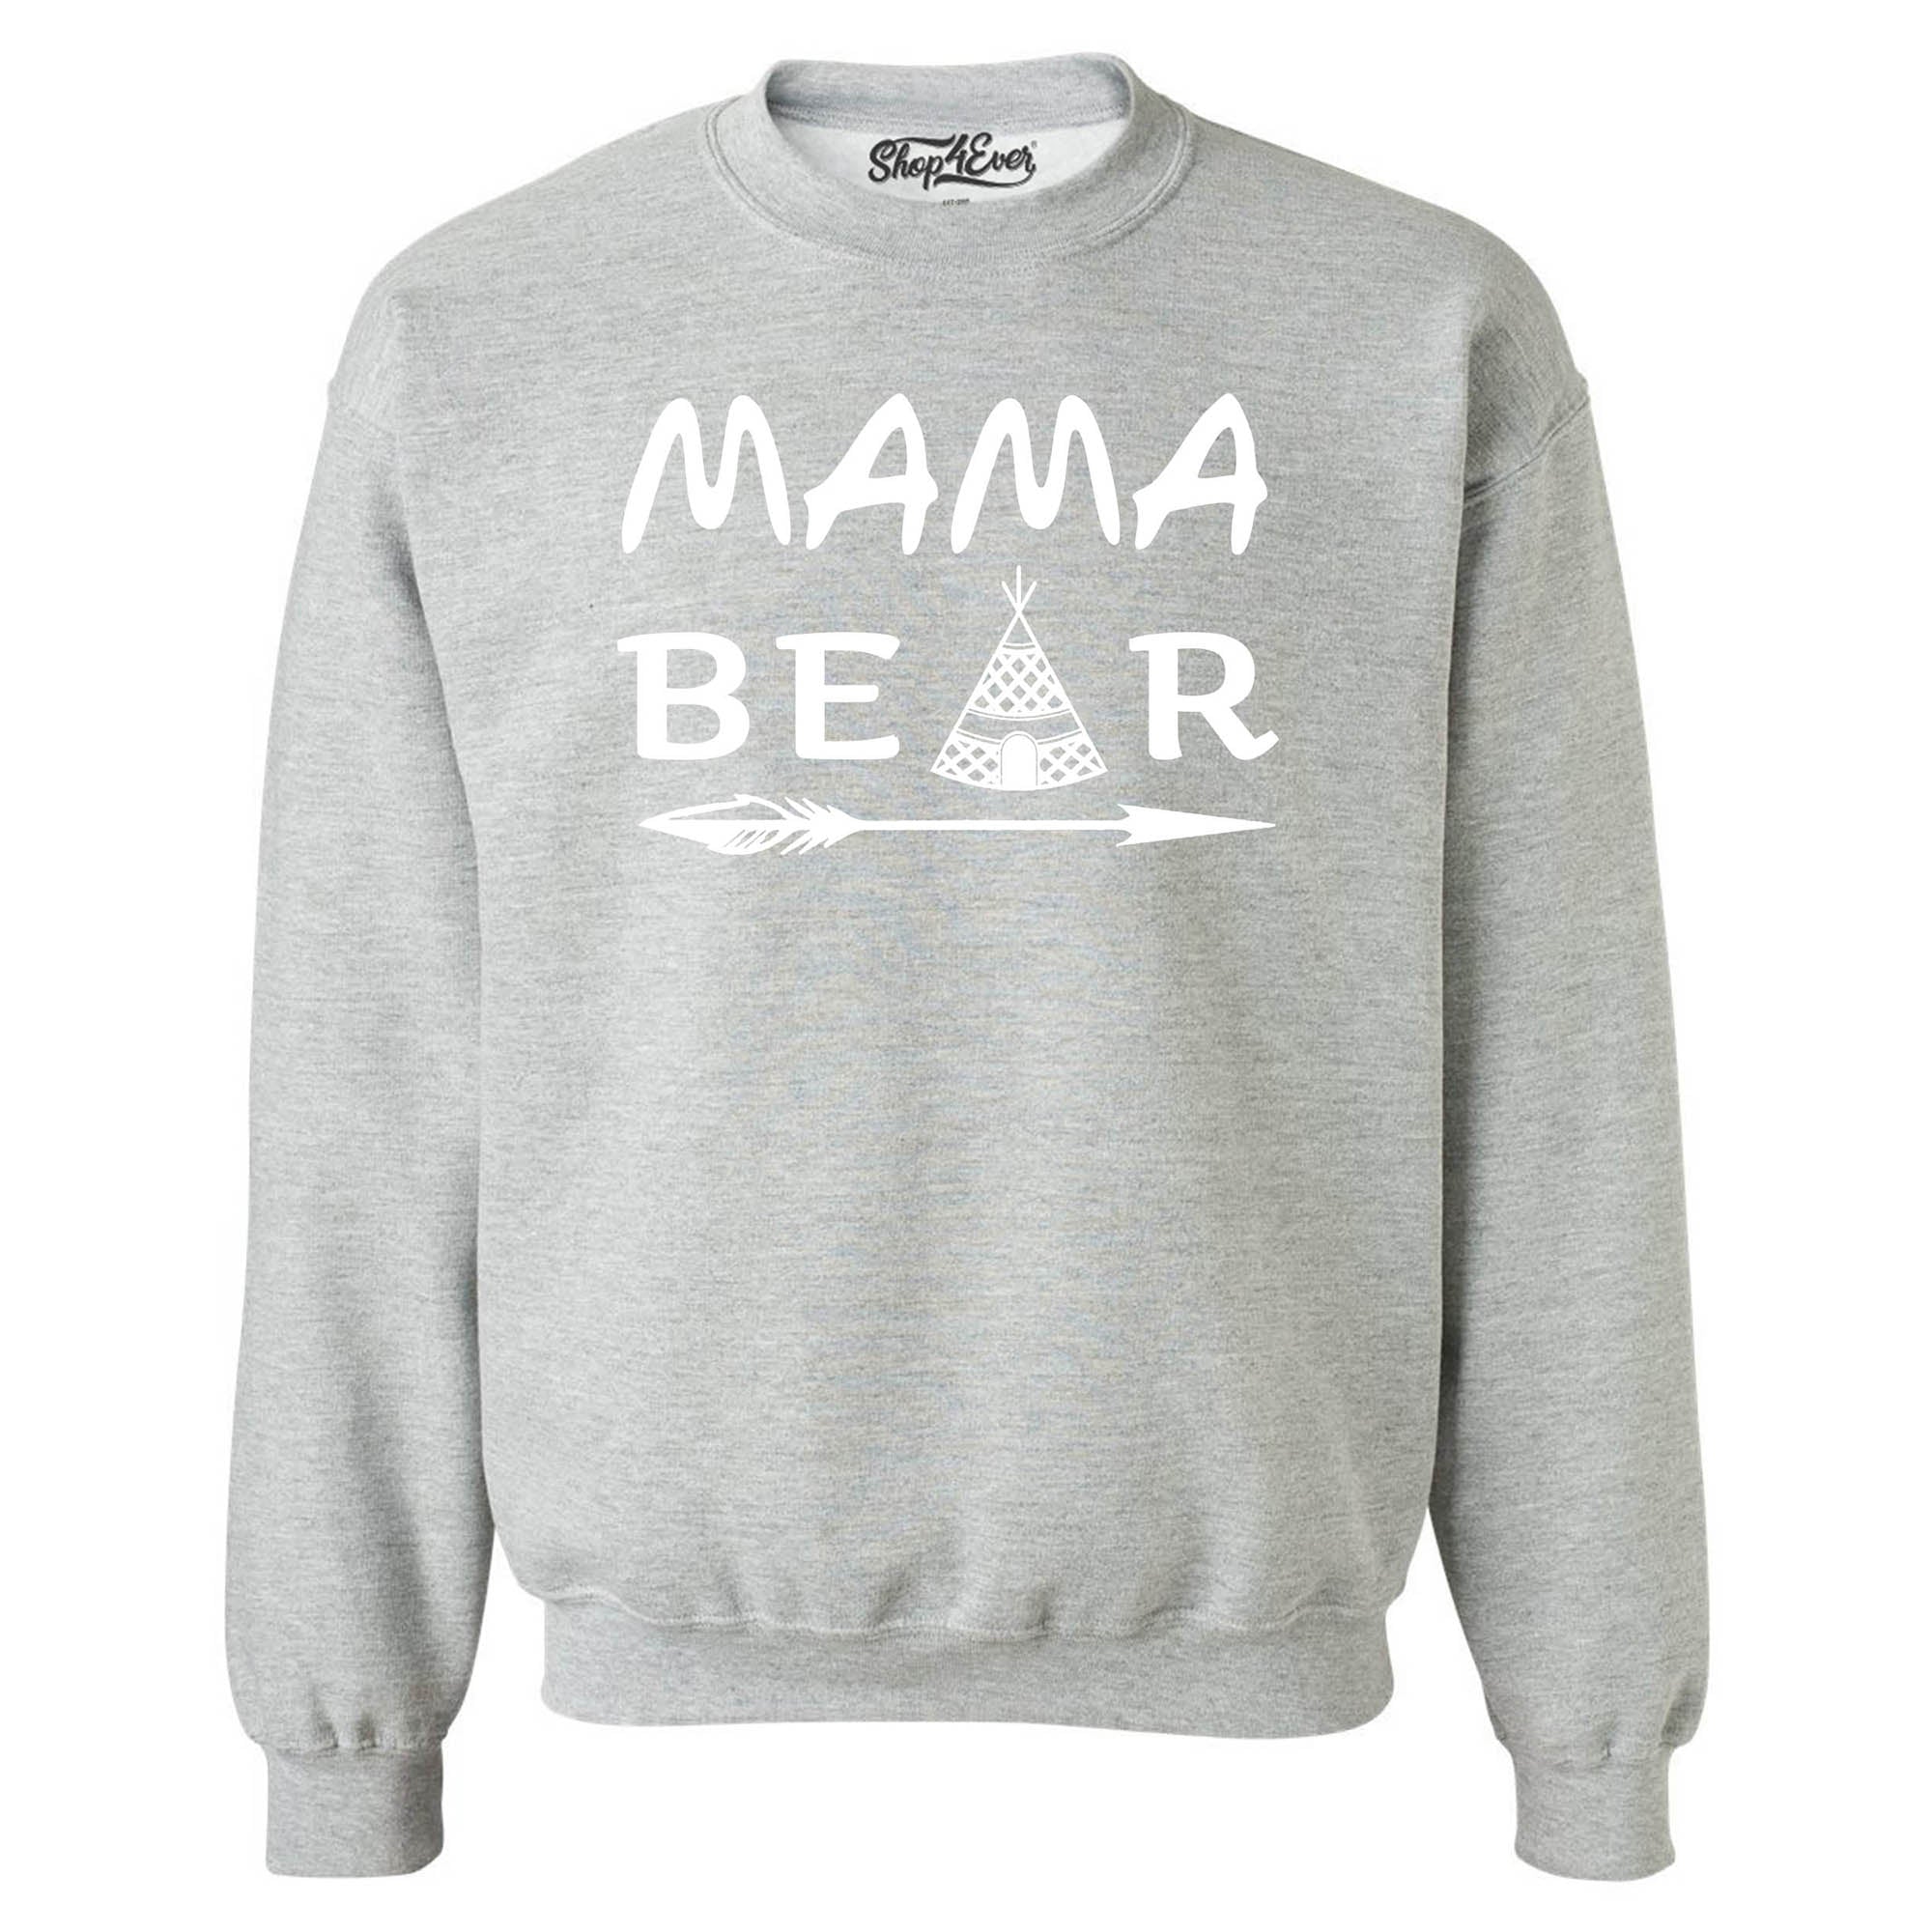 Mama Bear Teepee Crewneck Sweatshirts